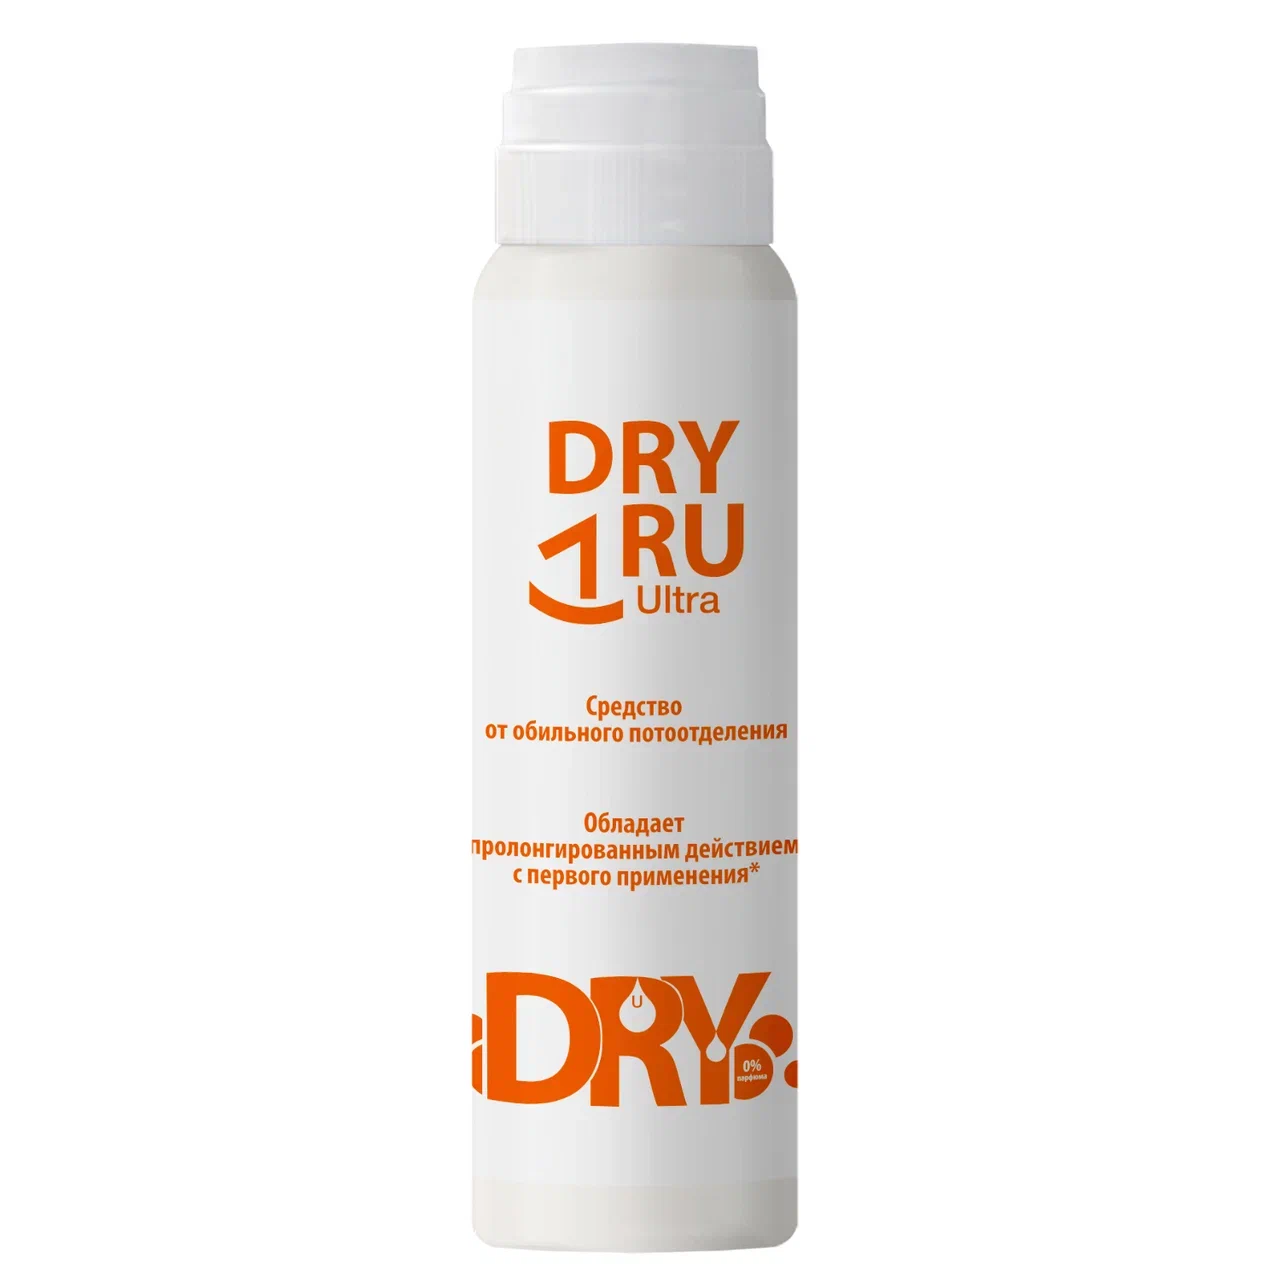 Дезодорант DRY RU Ультра от обильного потоотделения, с пролонгированным действием 50 мл витатека драй экстра форте дабоматик от обильного потоотделения 30% 50мл